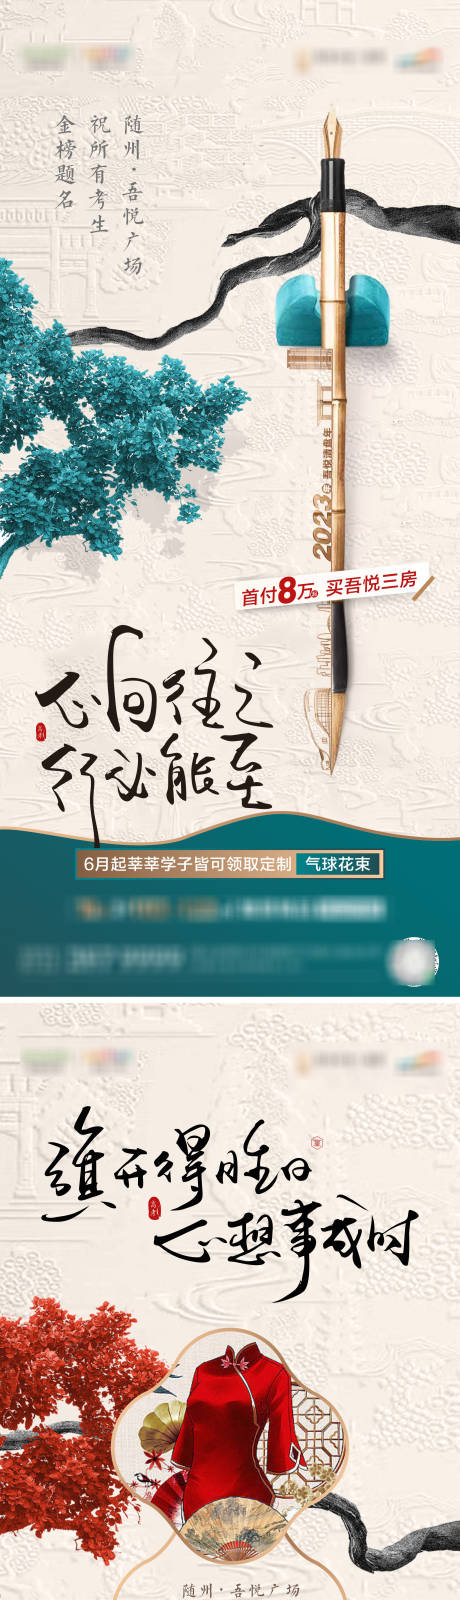 中式高考系列海报 